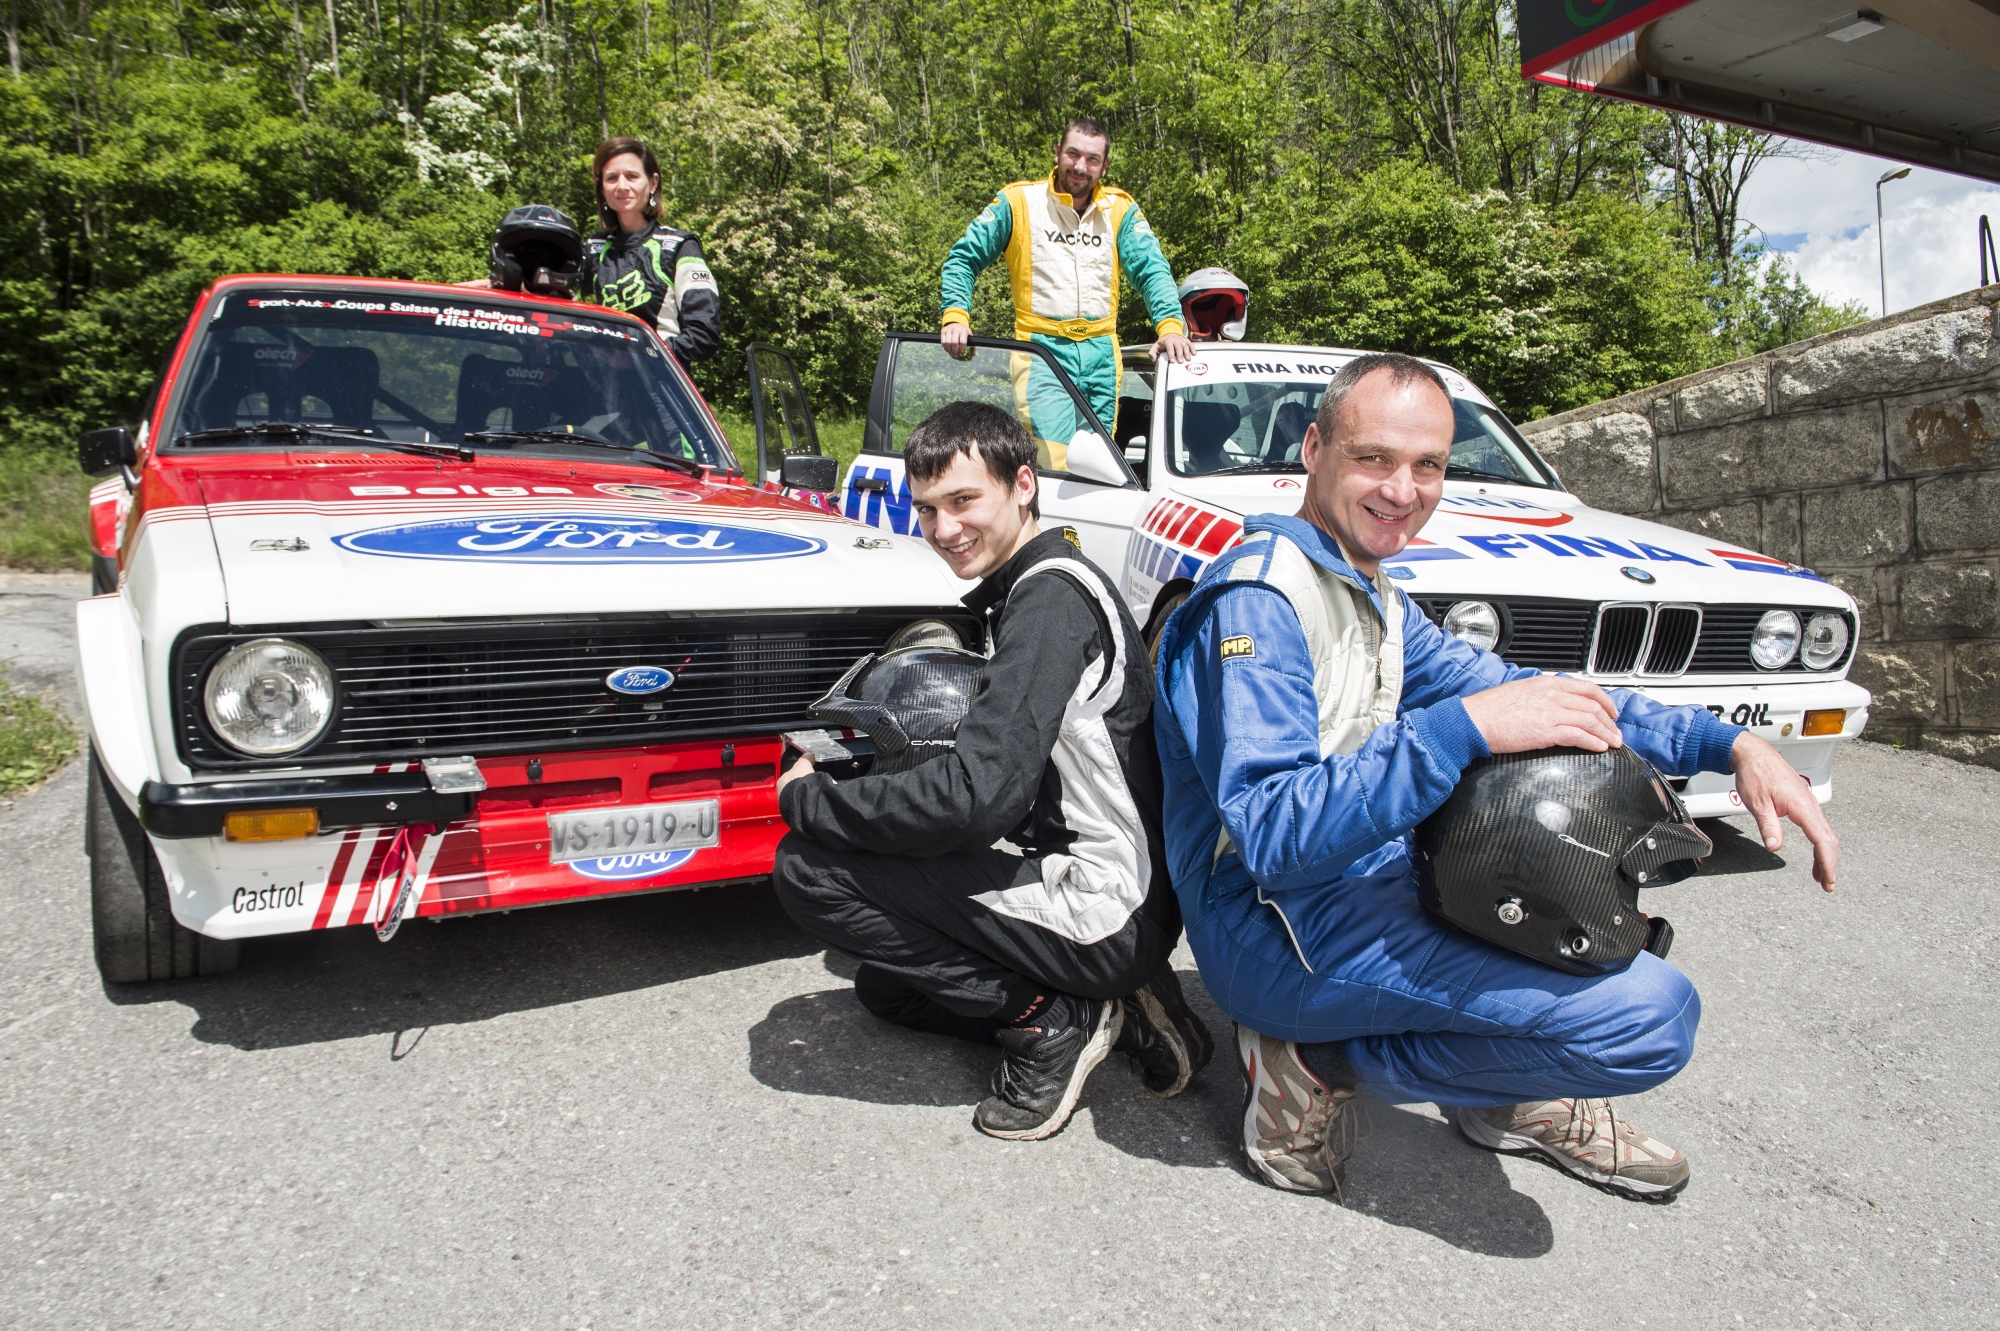 Florence et Kevin Bérard, à gauche, feront équipage sur une Ford Escort alors que Frédéric Rausis et Eddy Bérard seront associés dans une BMW M3.